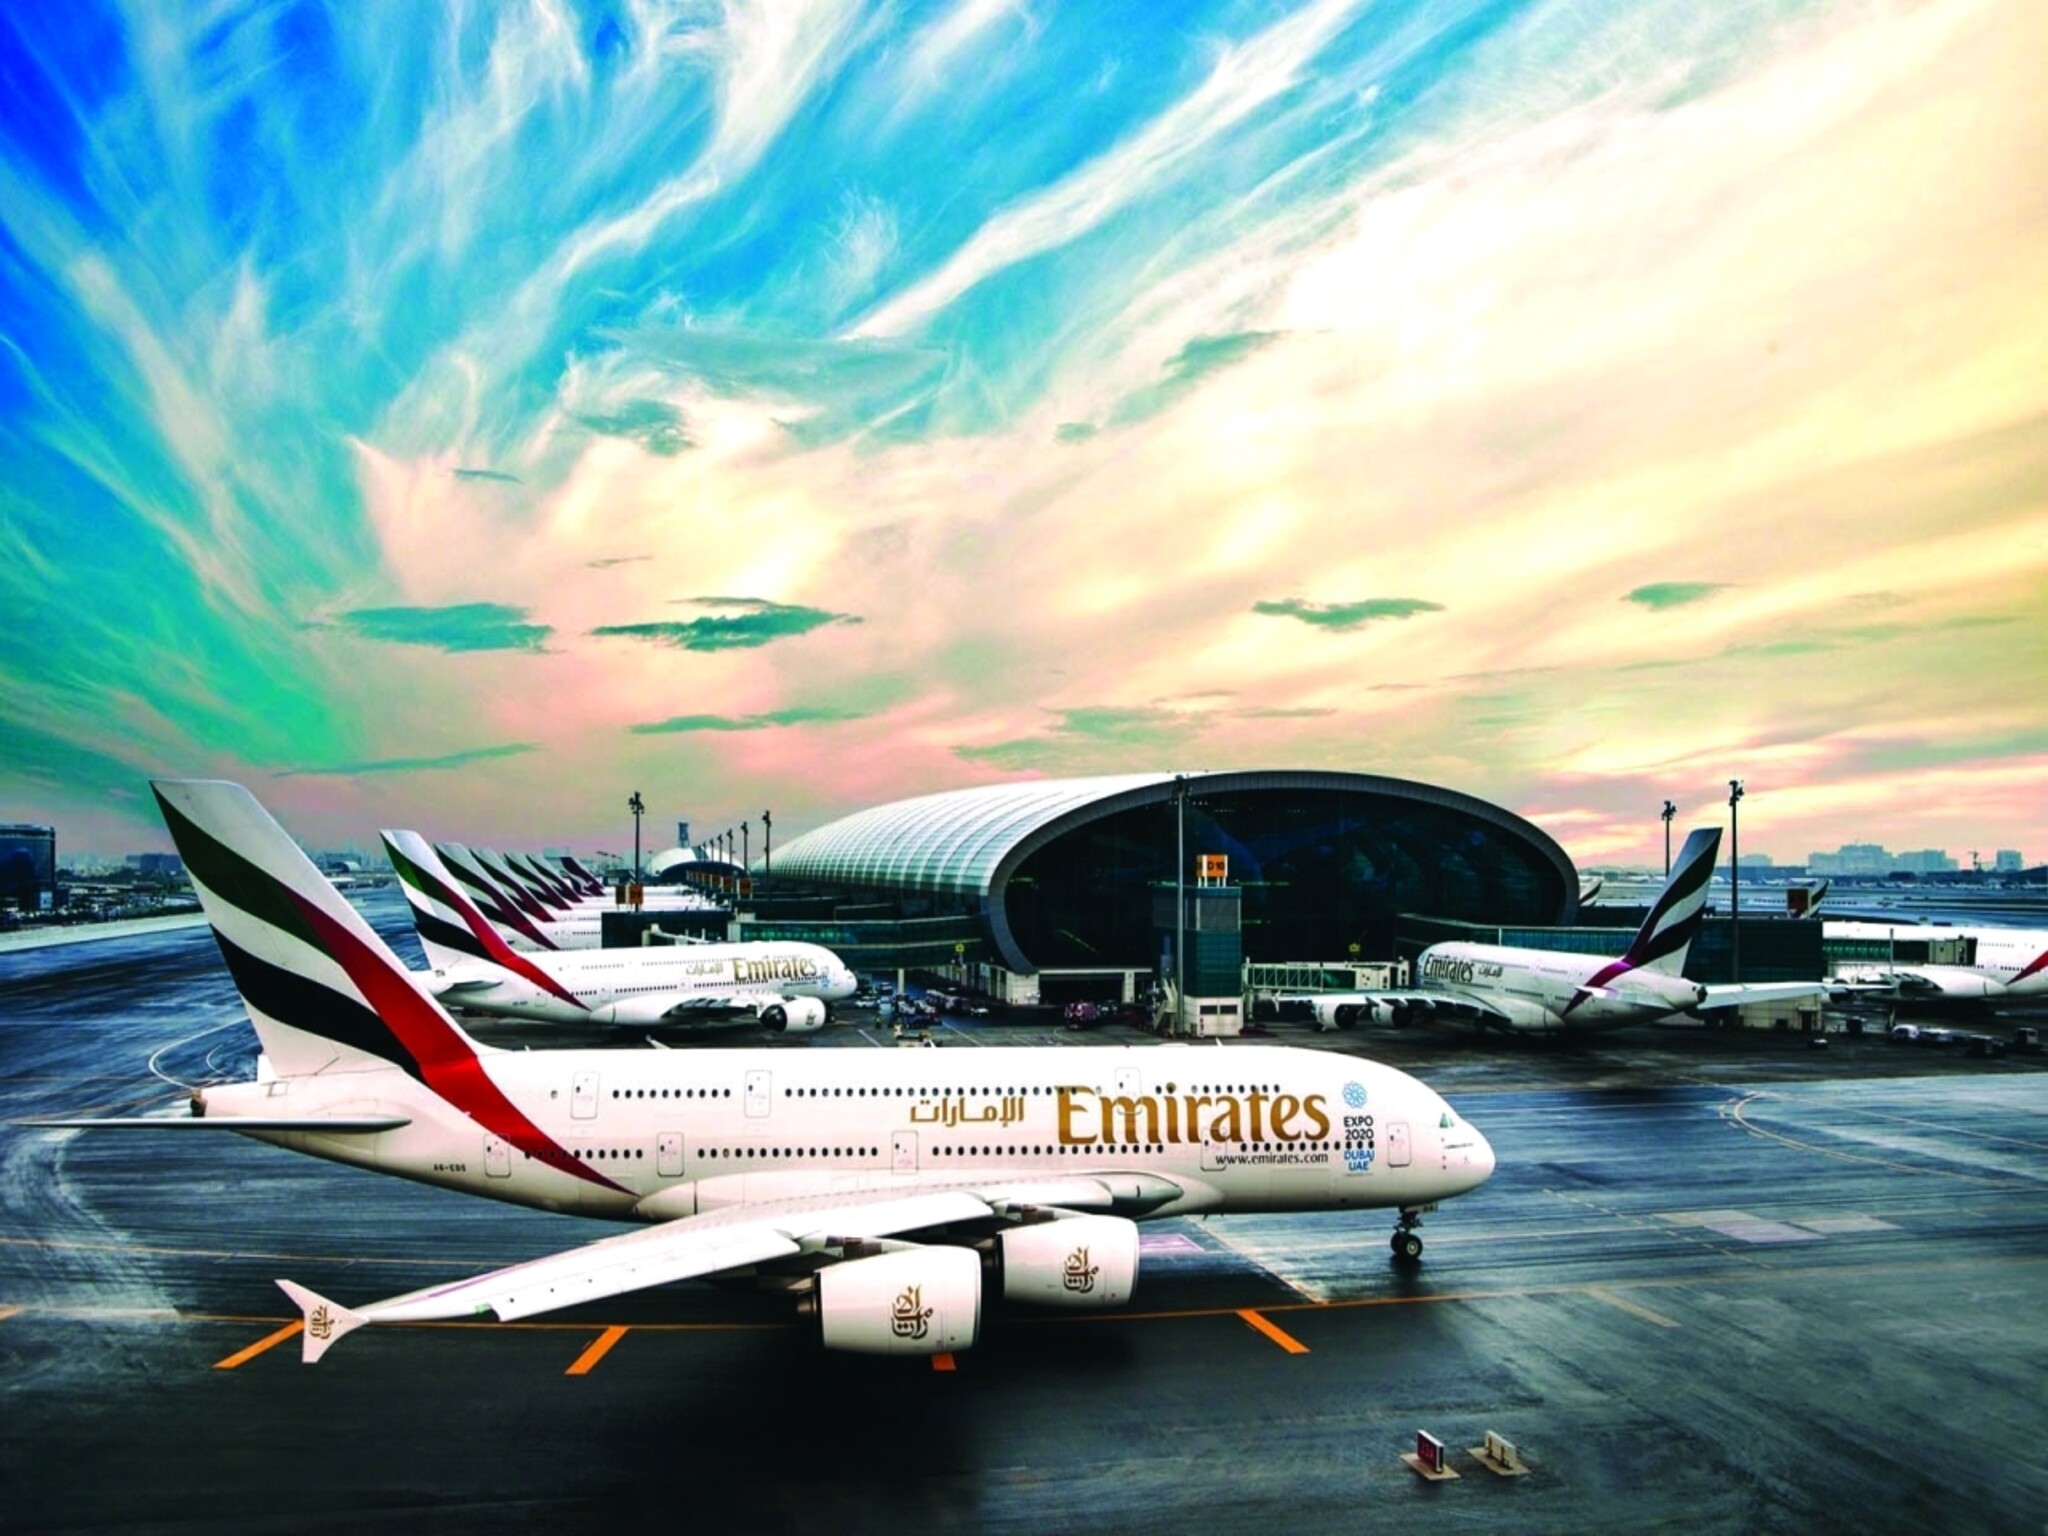 طيران الإمارات تعيد جدولة رحلات الطيران وتلغي بعضها بسبب التقلبات الجوية